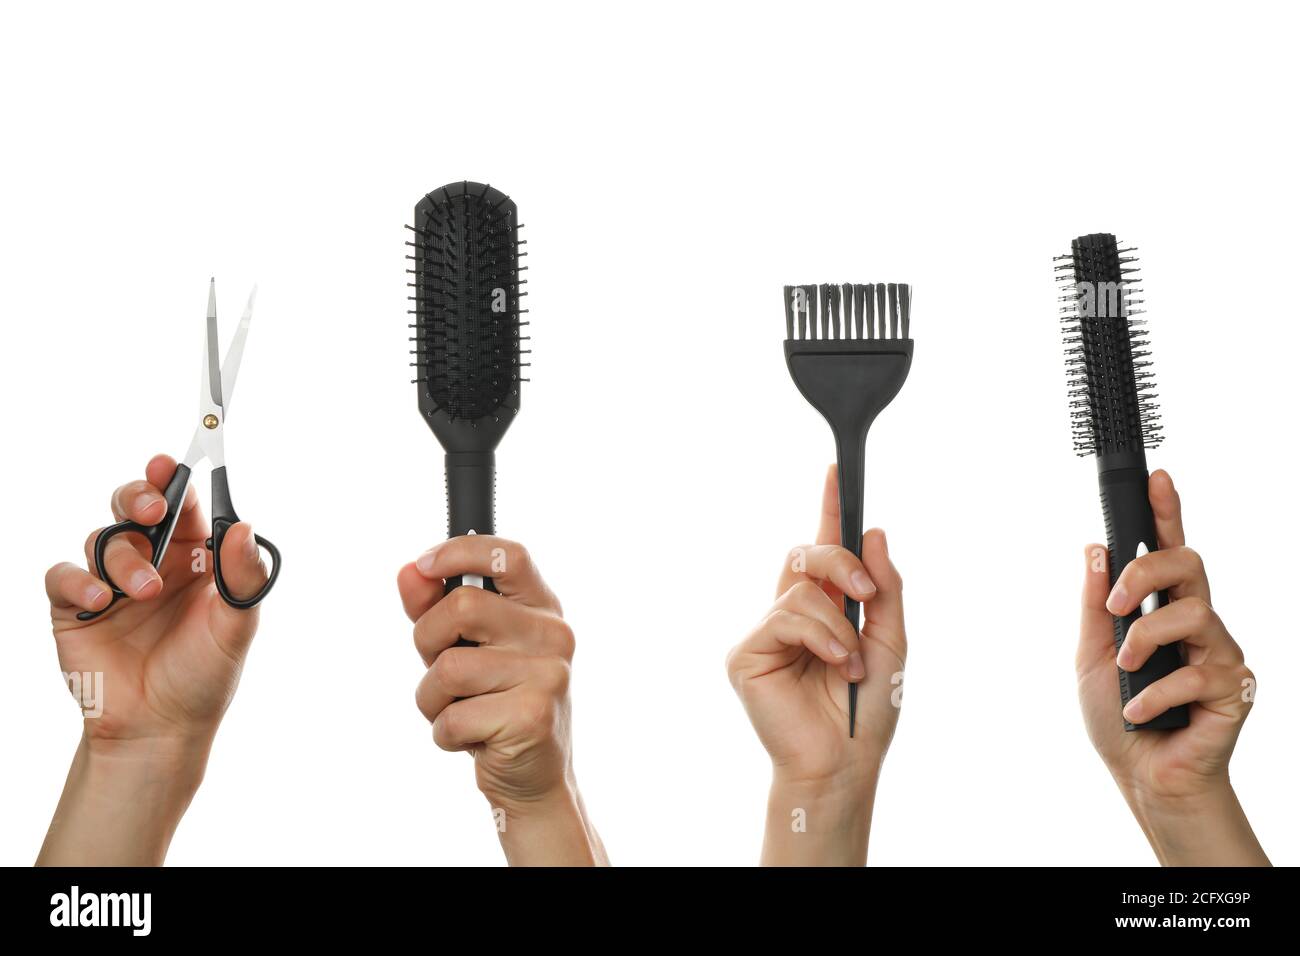 Le mani maschili e femminili tengono gli utensili per parrucchieri, isolati su sfondo bianco Foto Stock